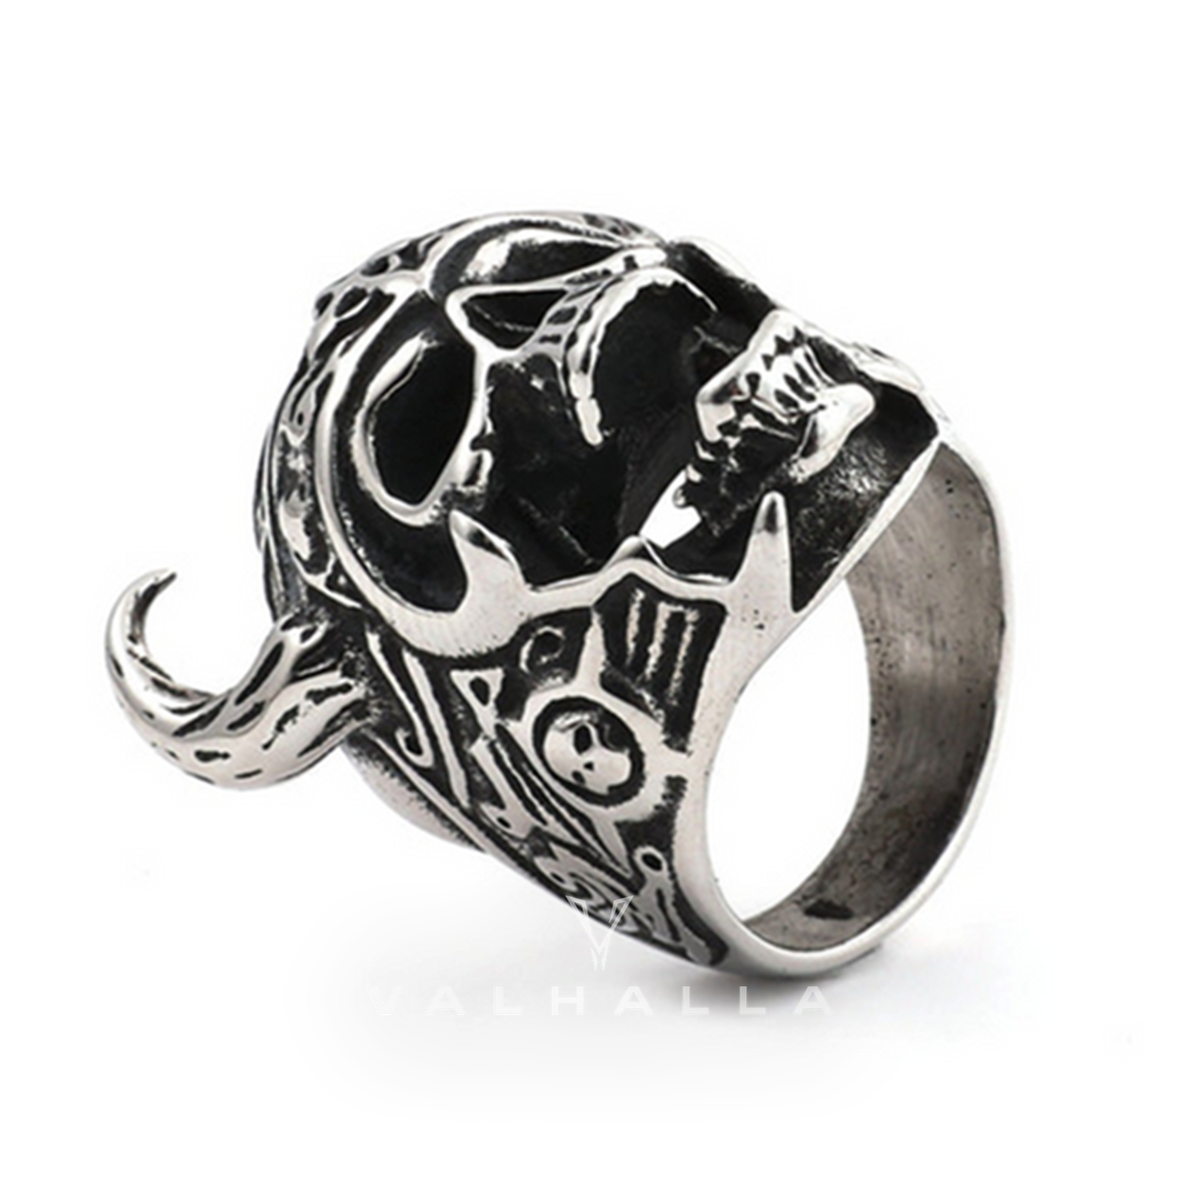 Nordic God of War Viking Warrior Skull Ring Stainless Steel